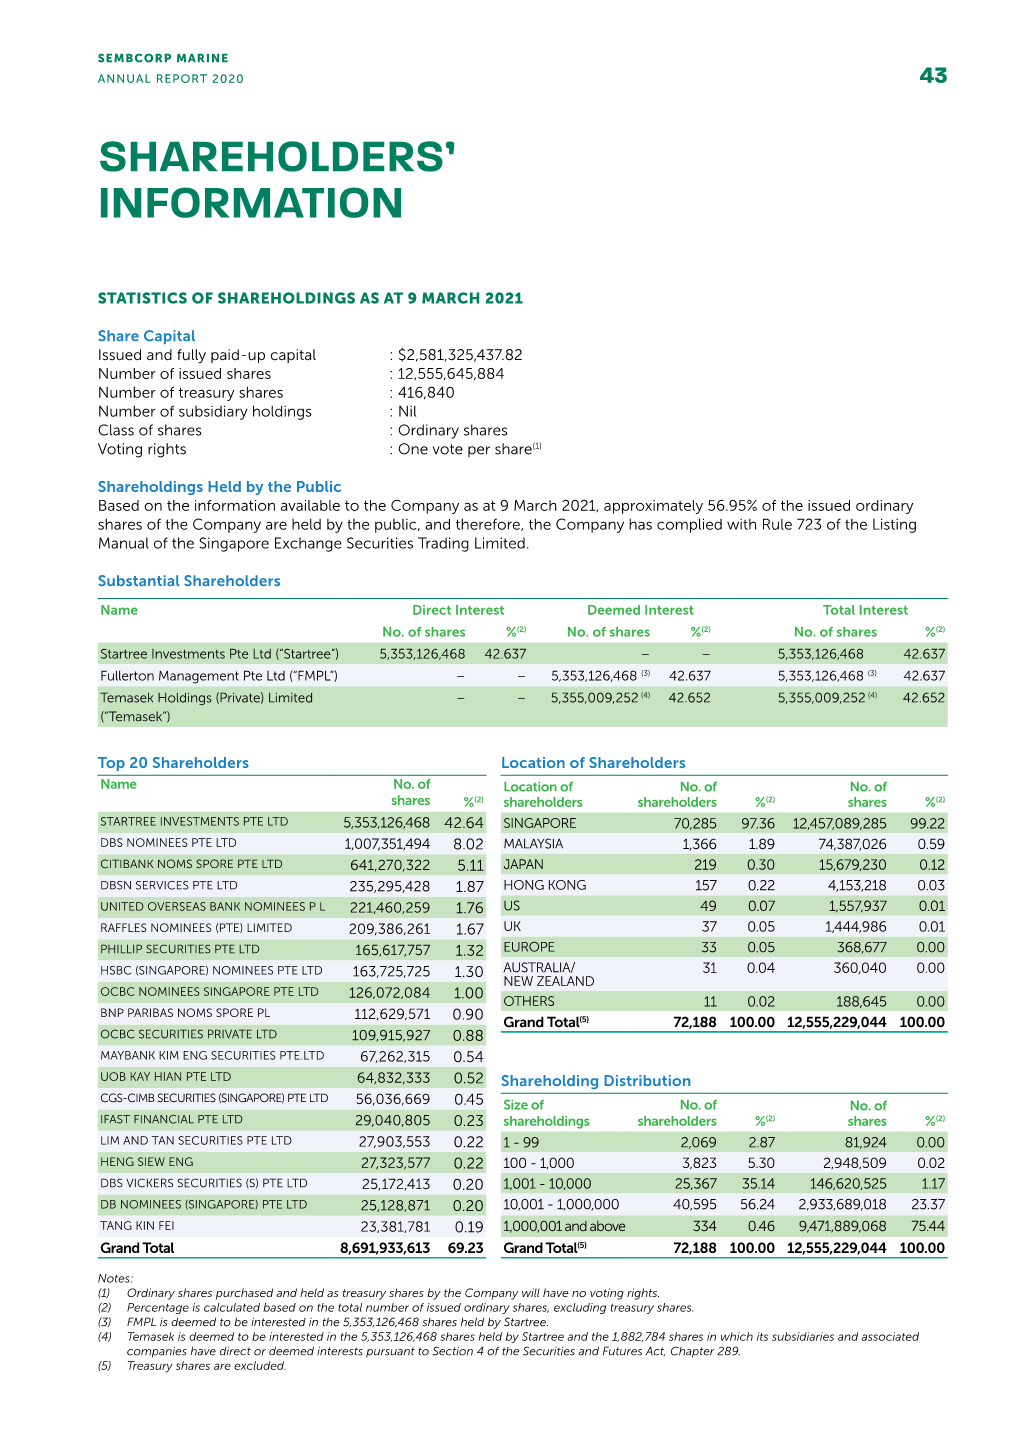 Shareholders' Information